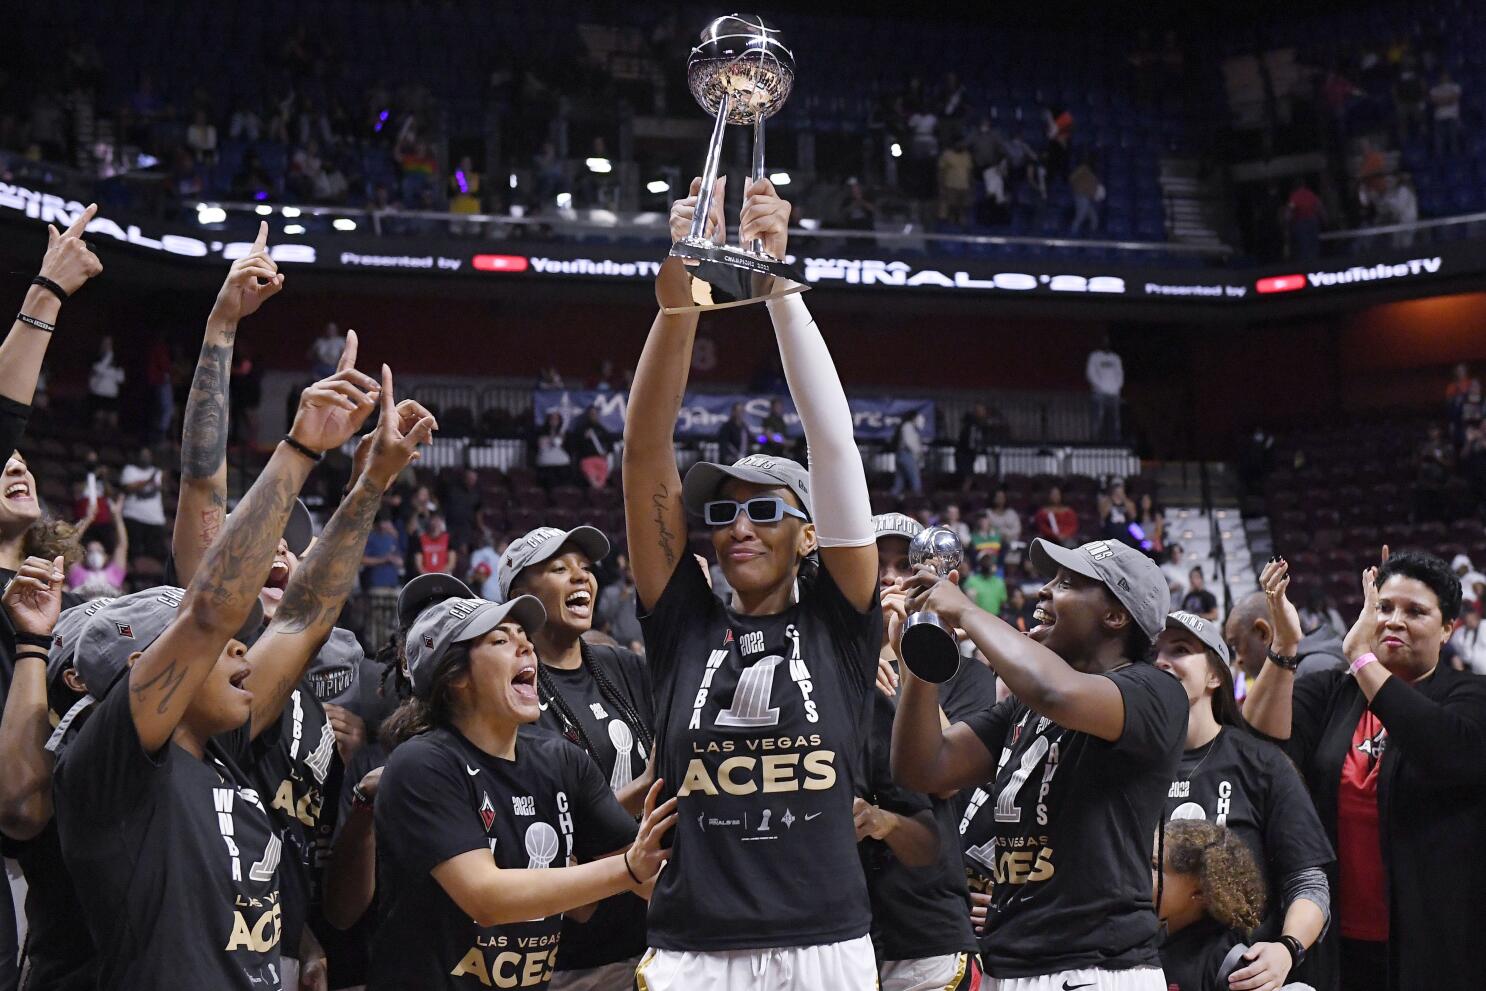 Las Vegas Aces - 🏆 2022 WNBA CHAMP 🏆 2022 FINALS MVP